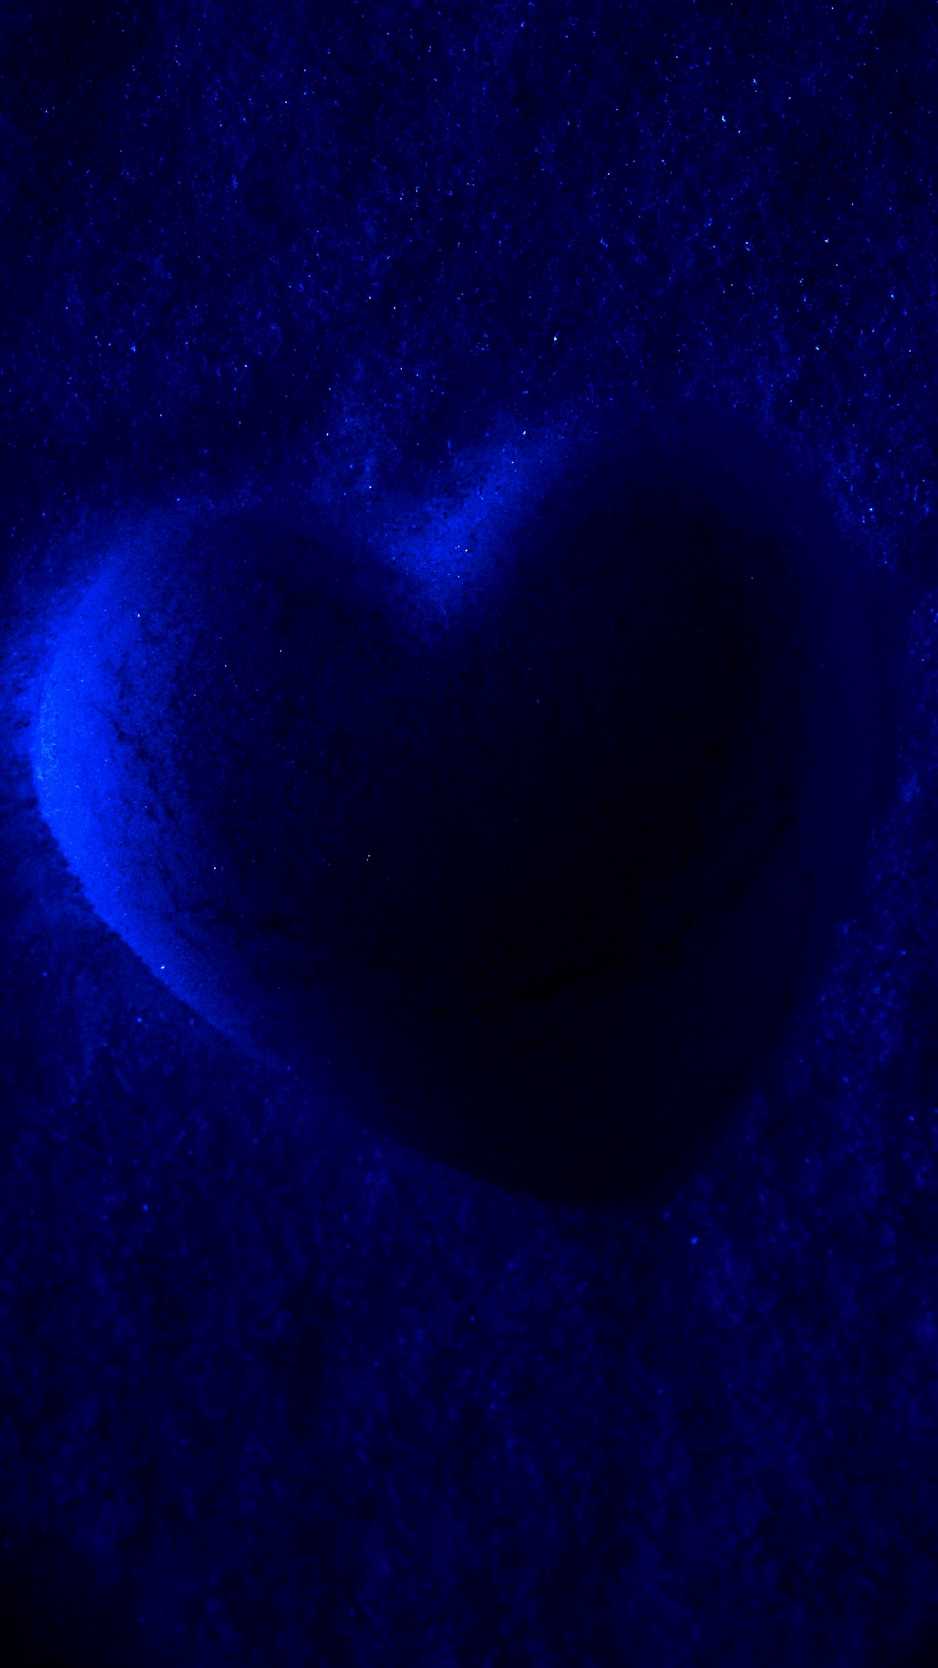 Blue Heart Wallpaper 1